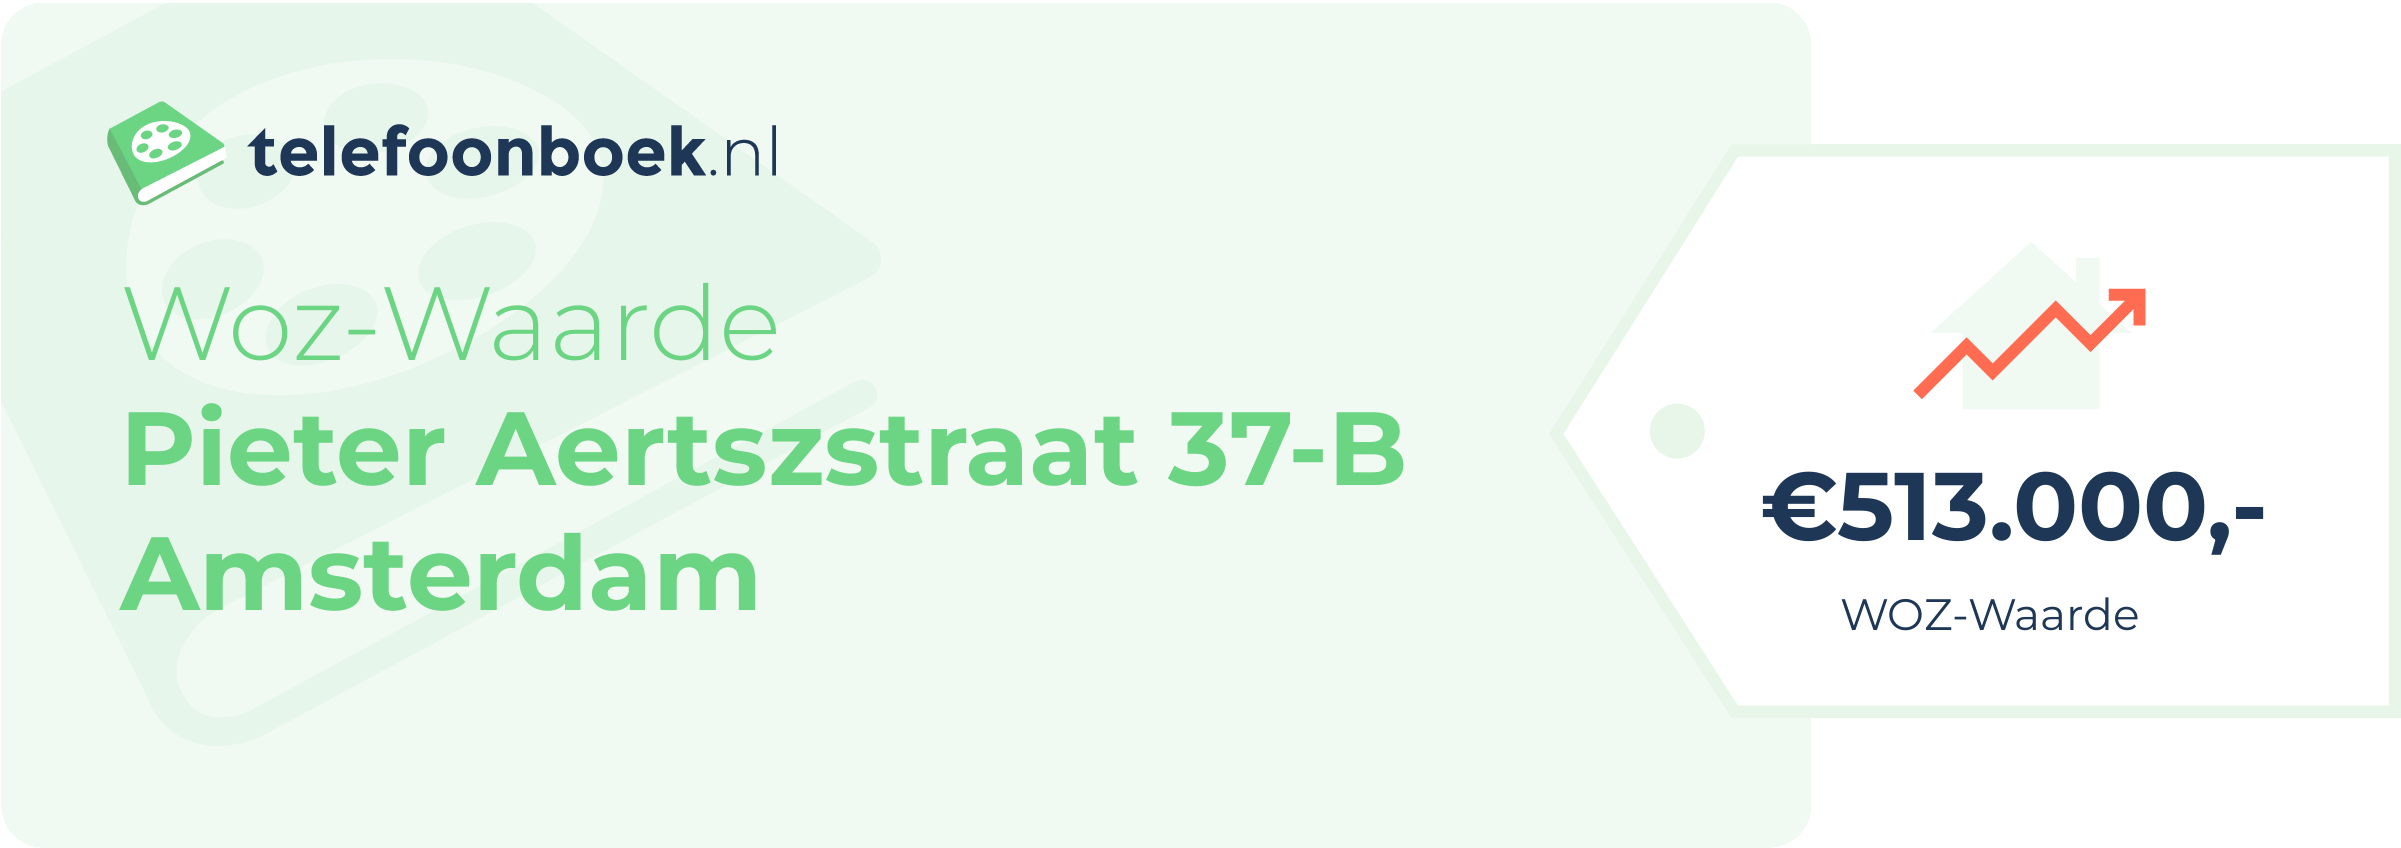 WOZ-waarde Pieter Aertszstraat 37-B Amsterdam